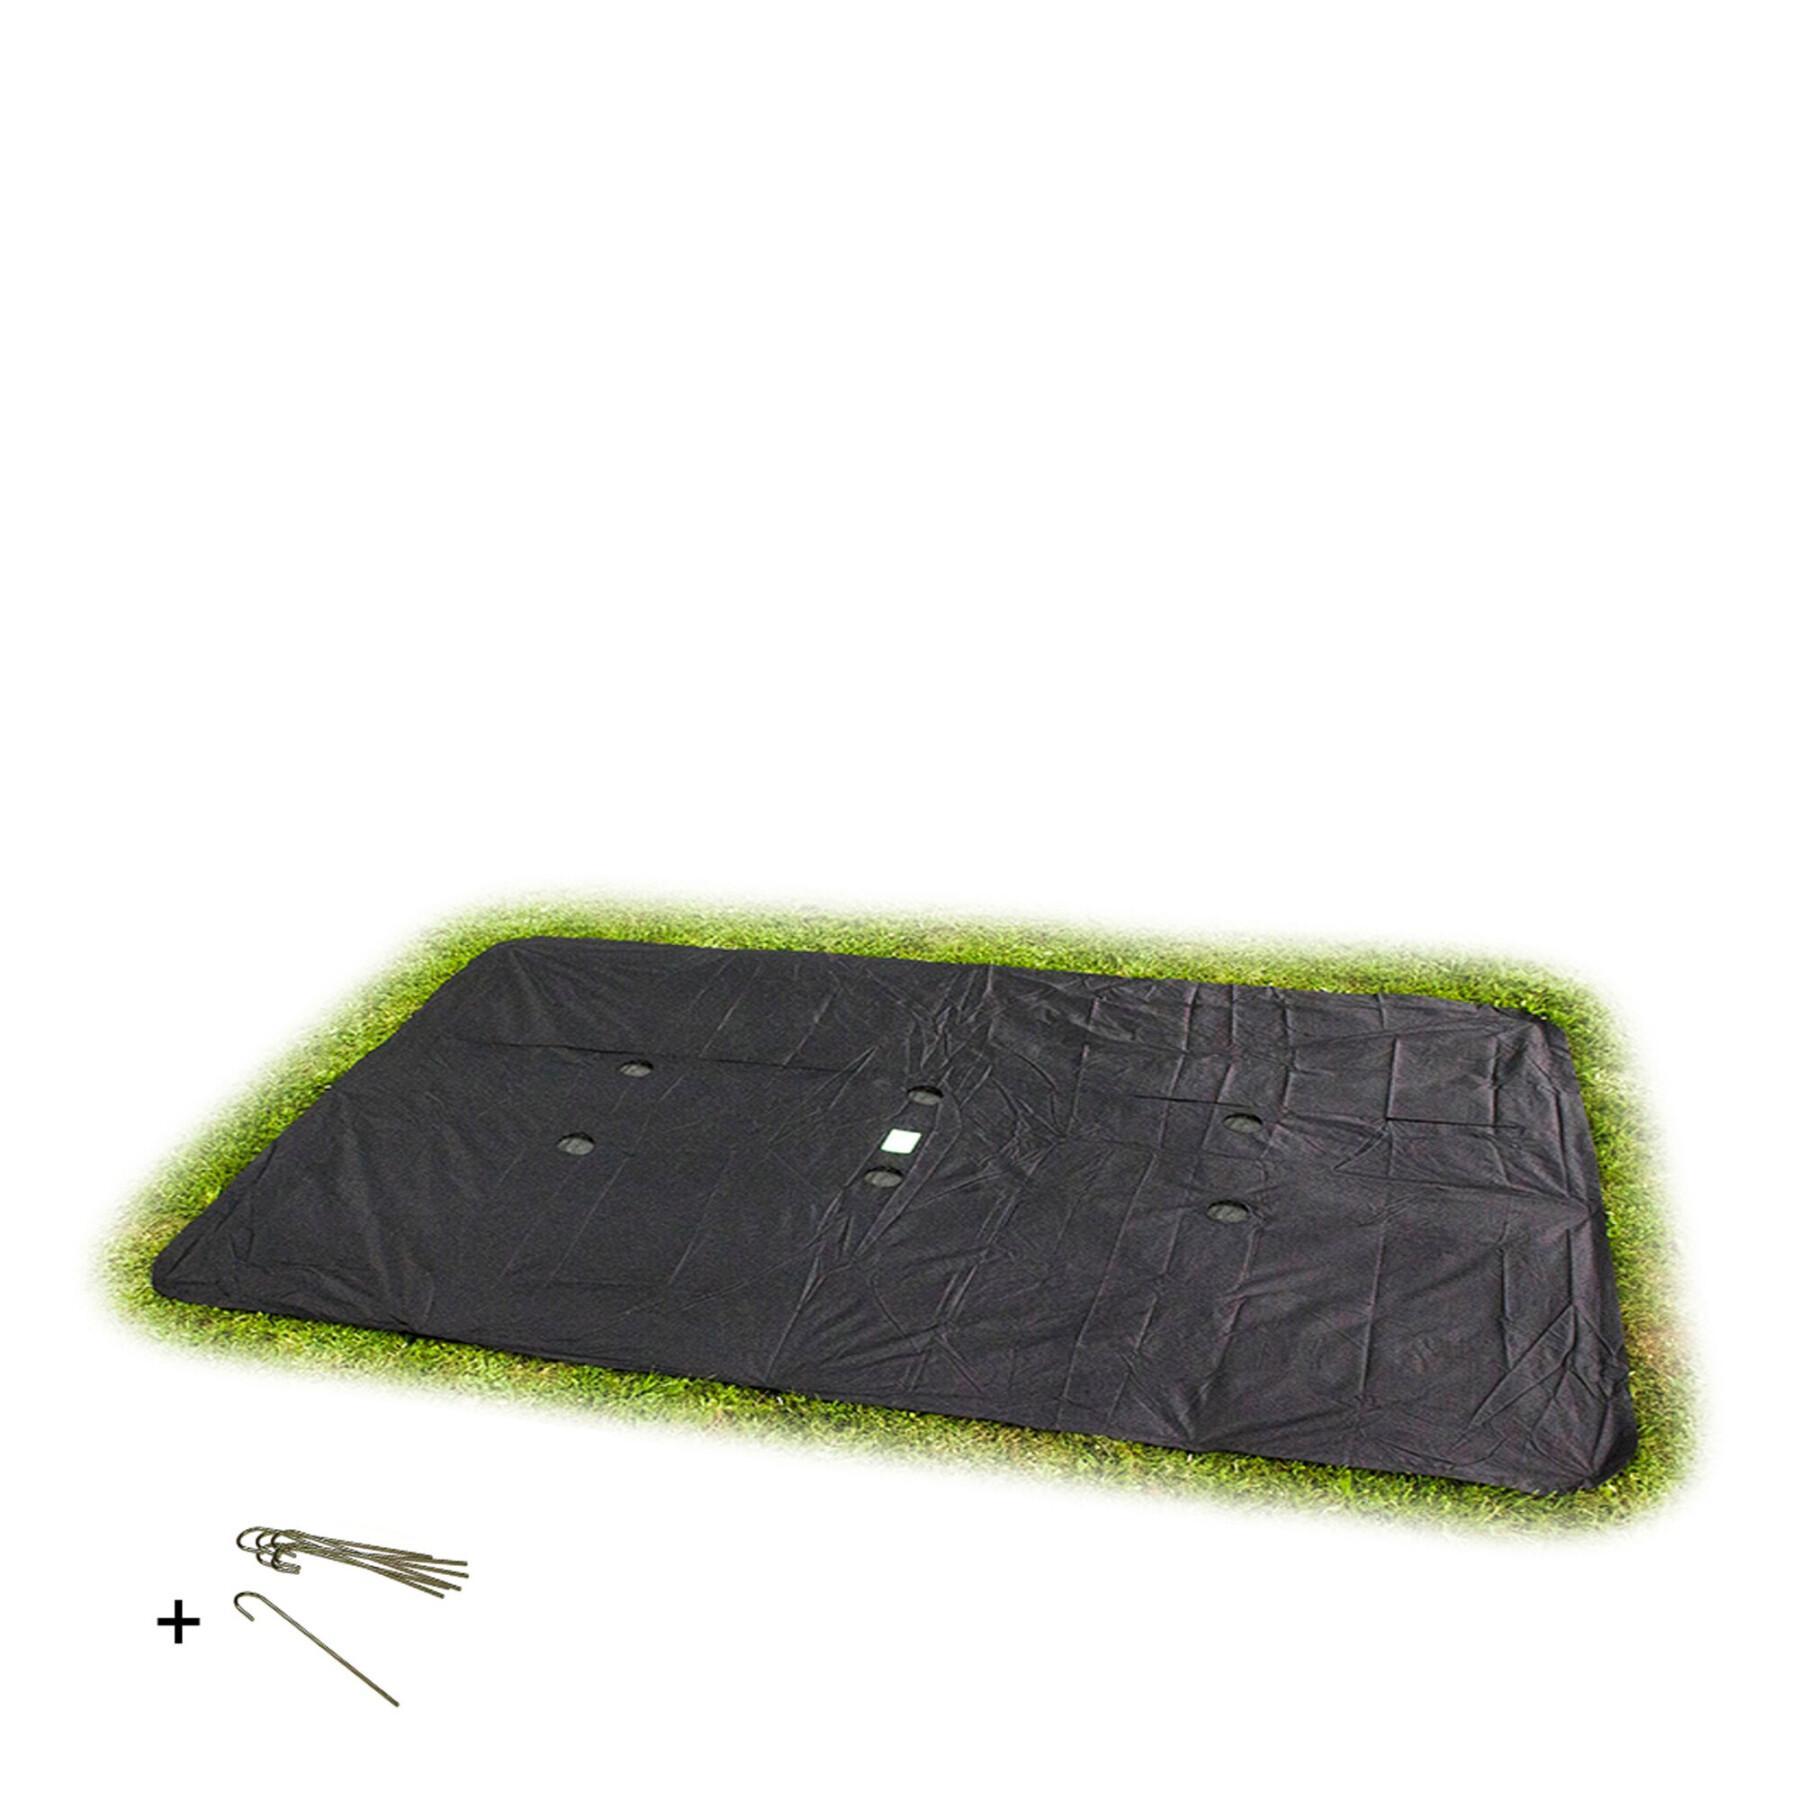 Prostokątna osłona ochronna do trampoliny w poziomie gruntu Exit Toys 275 x 458 cm